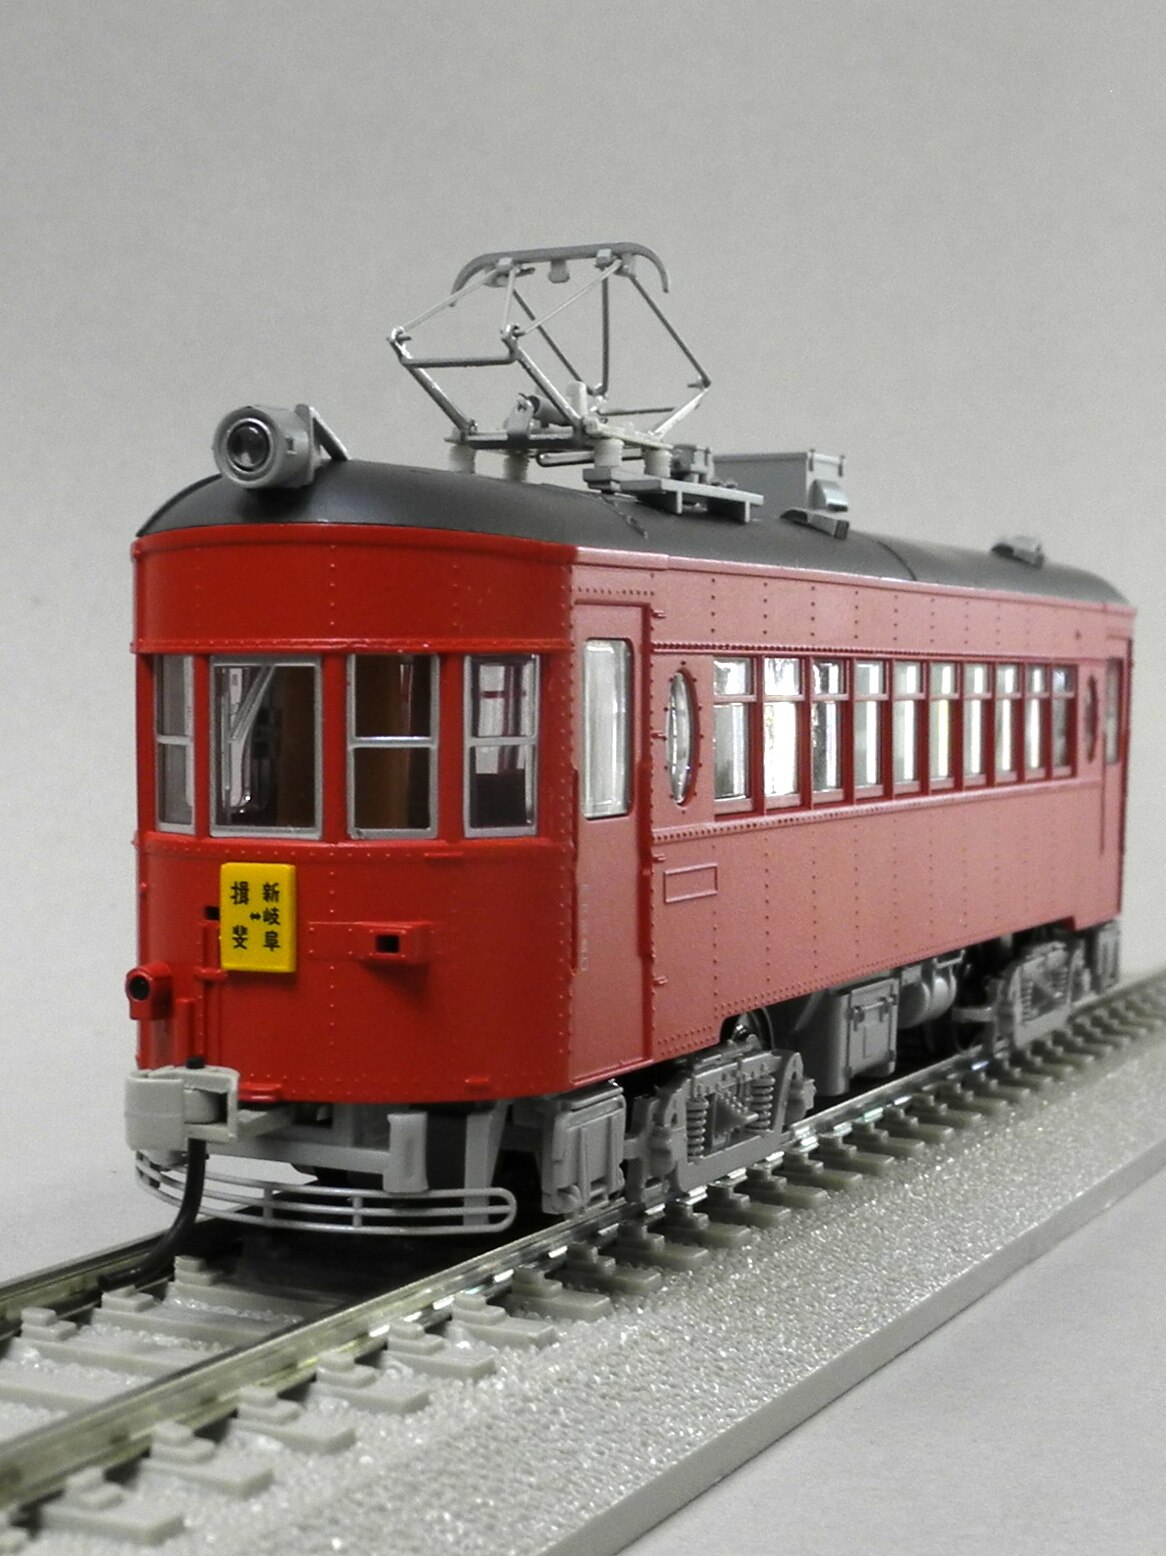 【直販早割】TOMIX HO-604 名古屋鉄道 モ510形 スカーレット 鉄道 模型 HOゲージ 中古 T6377439 JR、国鉄車輌